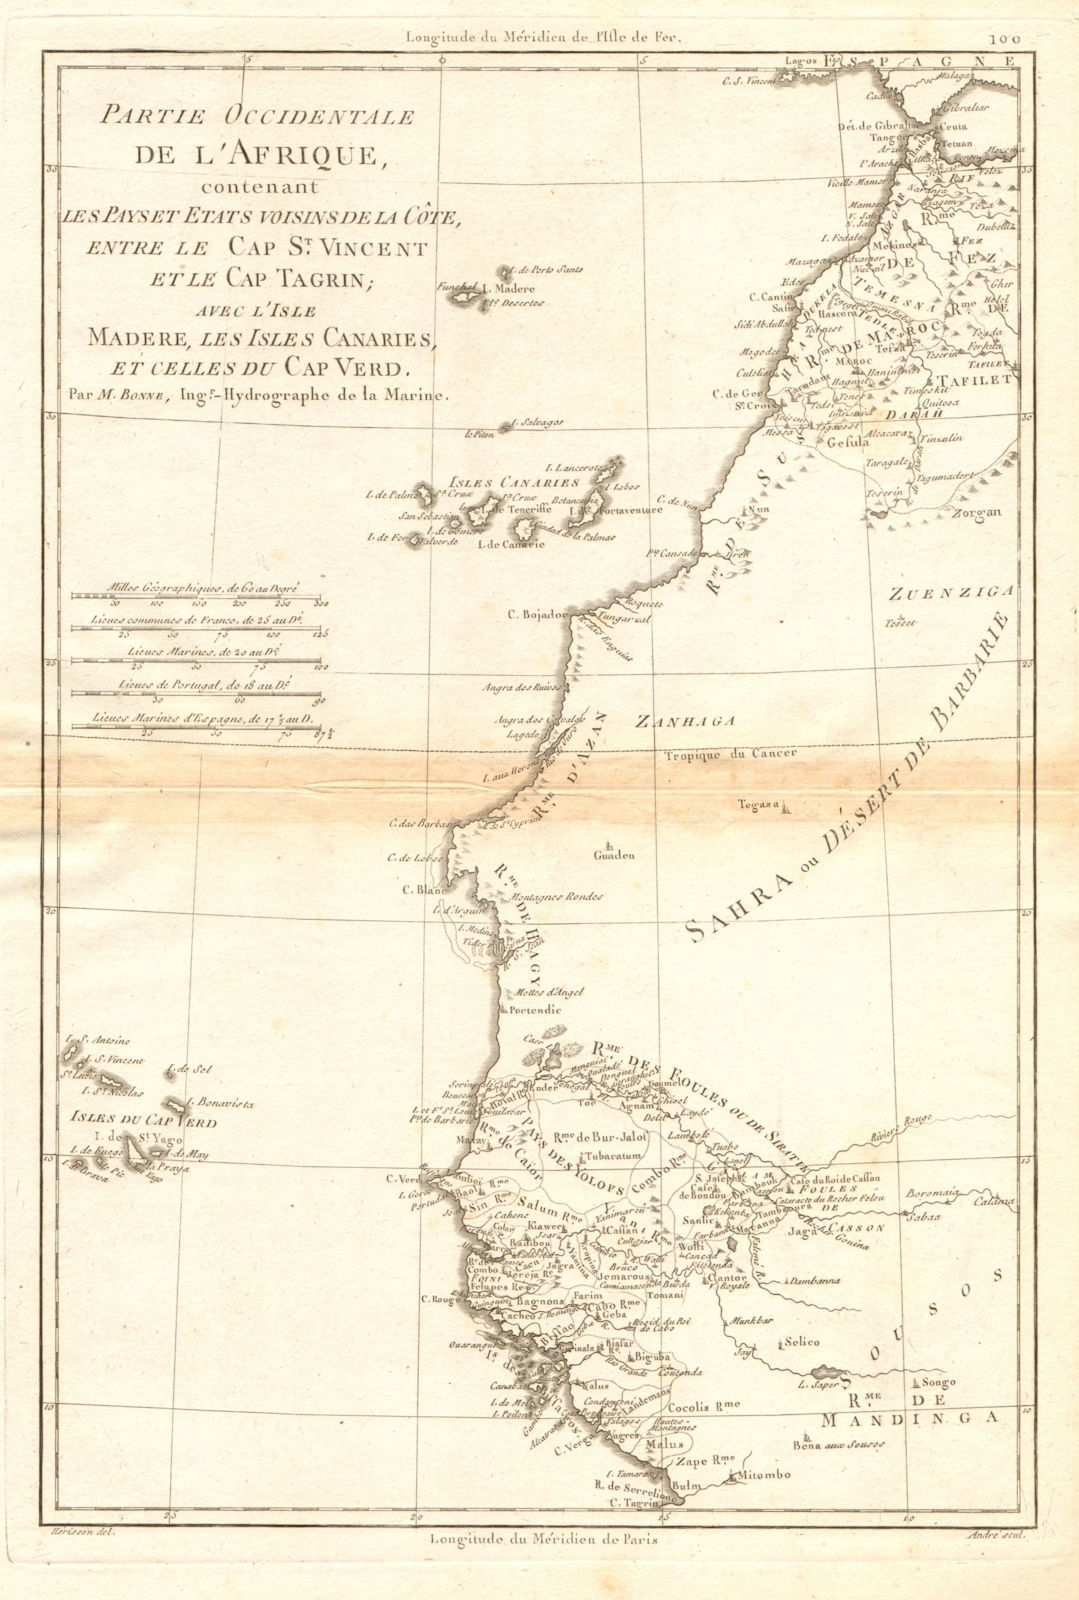 Partie Occidentale de l’Afrique. West Africa coast Canary islands BONNE 1788 map